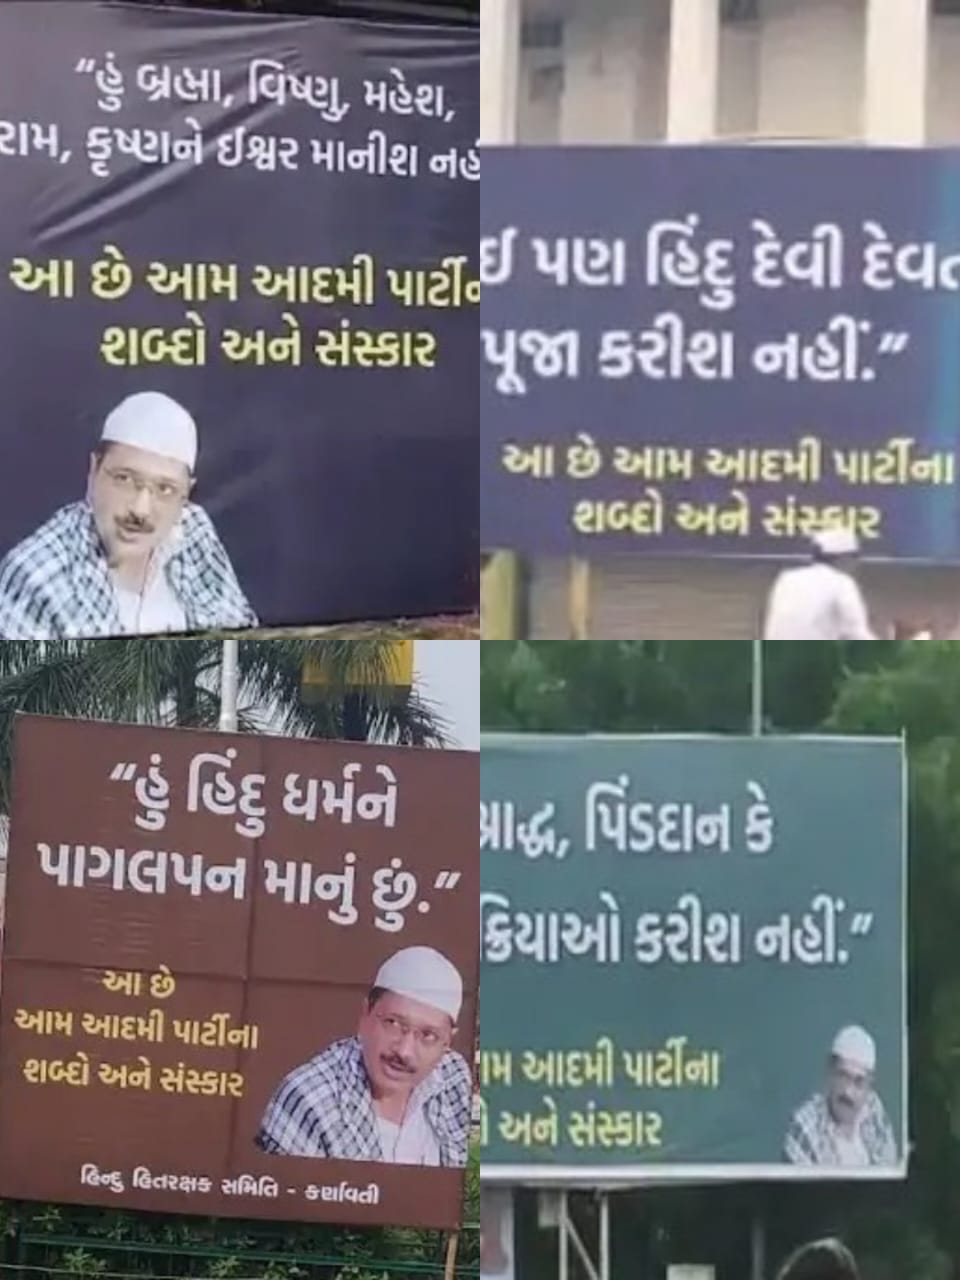 गुजरात में केजरीवाल की फोटो के साथ पोस्टर लिखा हिन्दू धर्म को पागलपन मानता हूं